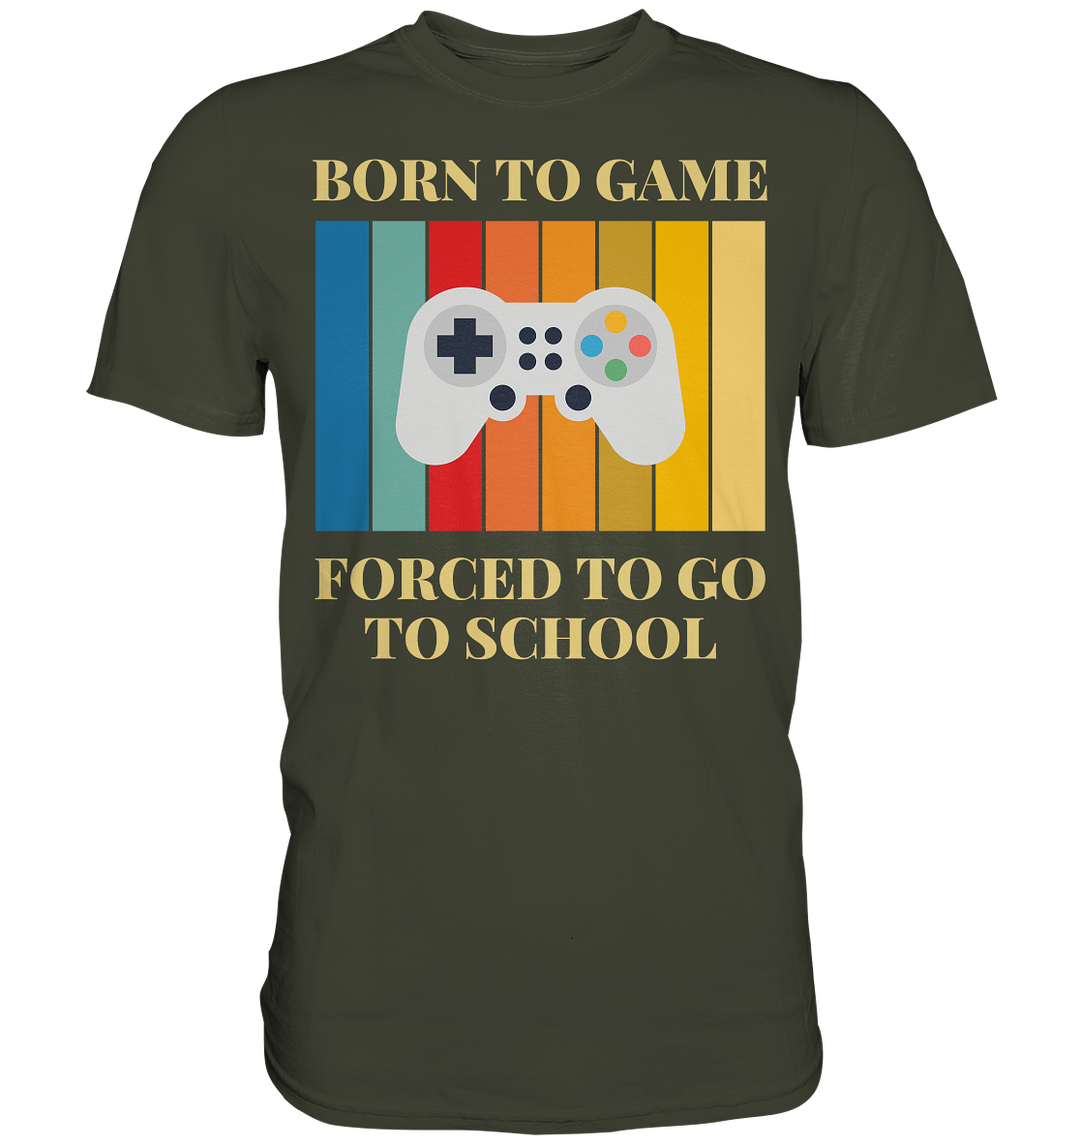 Ein muss für jeden Gamer - Premium Shirt